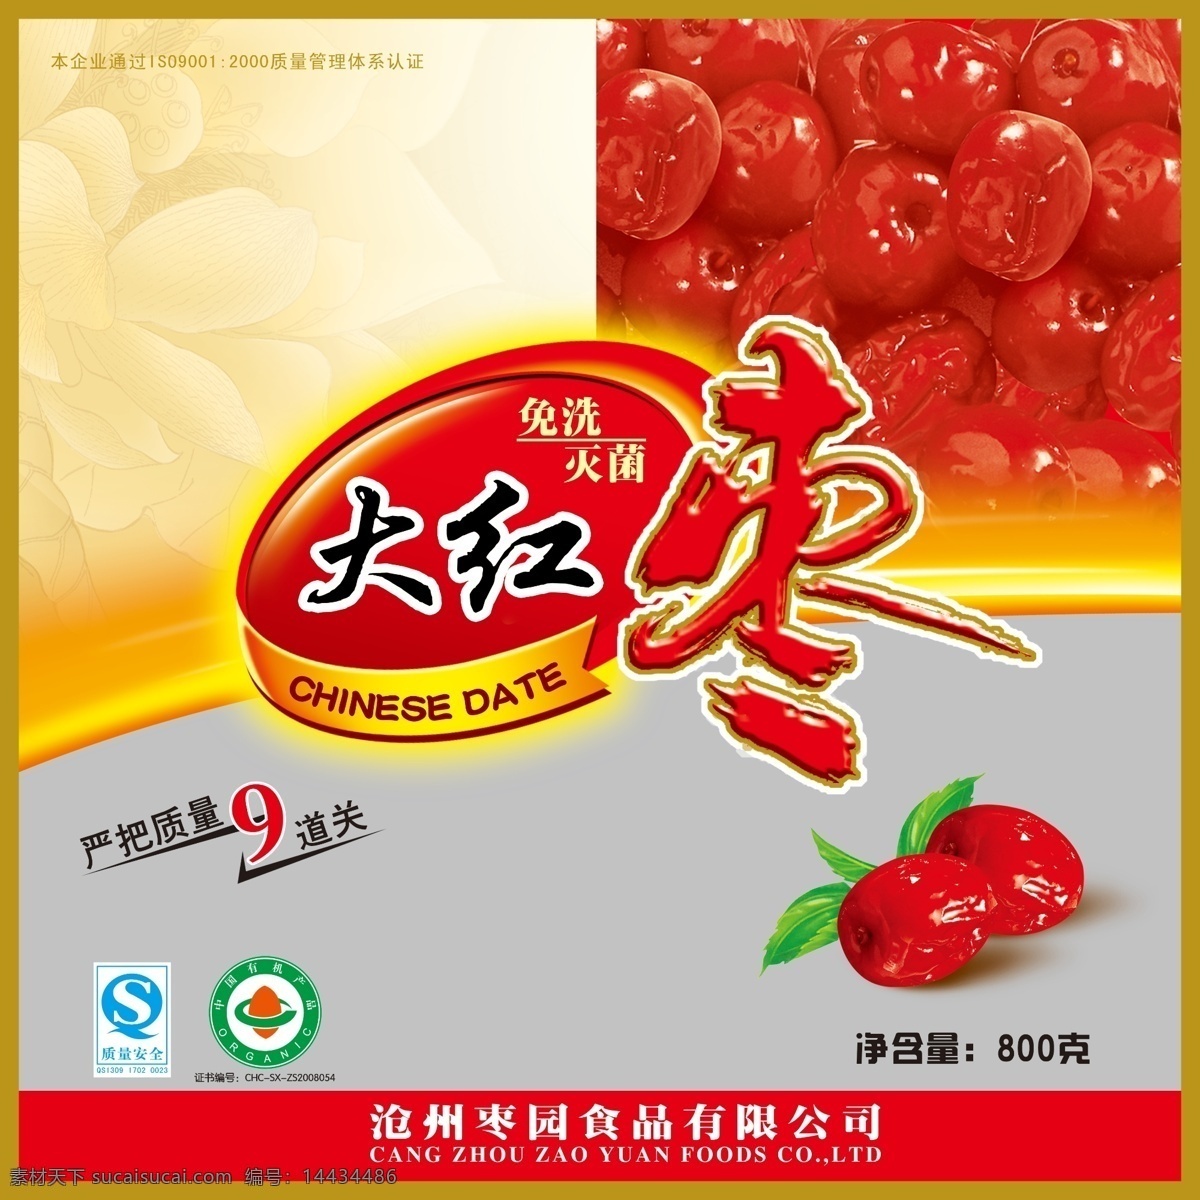 大红枣 红枣 枣 莲花 红色的枣 包装设计 广告设计模板 源文件